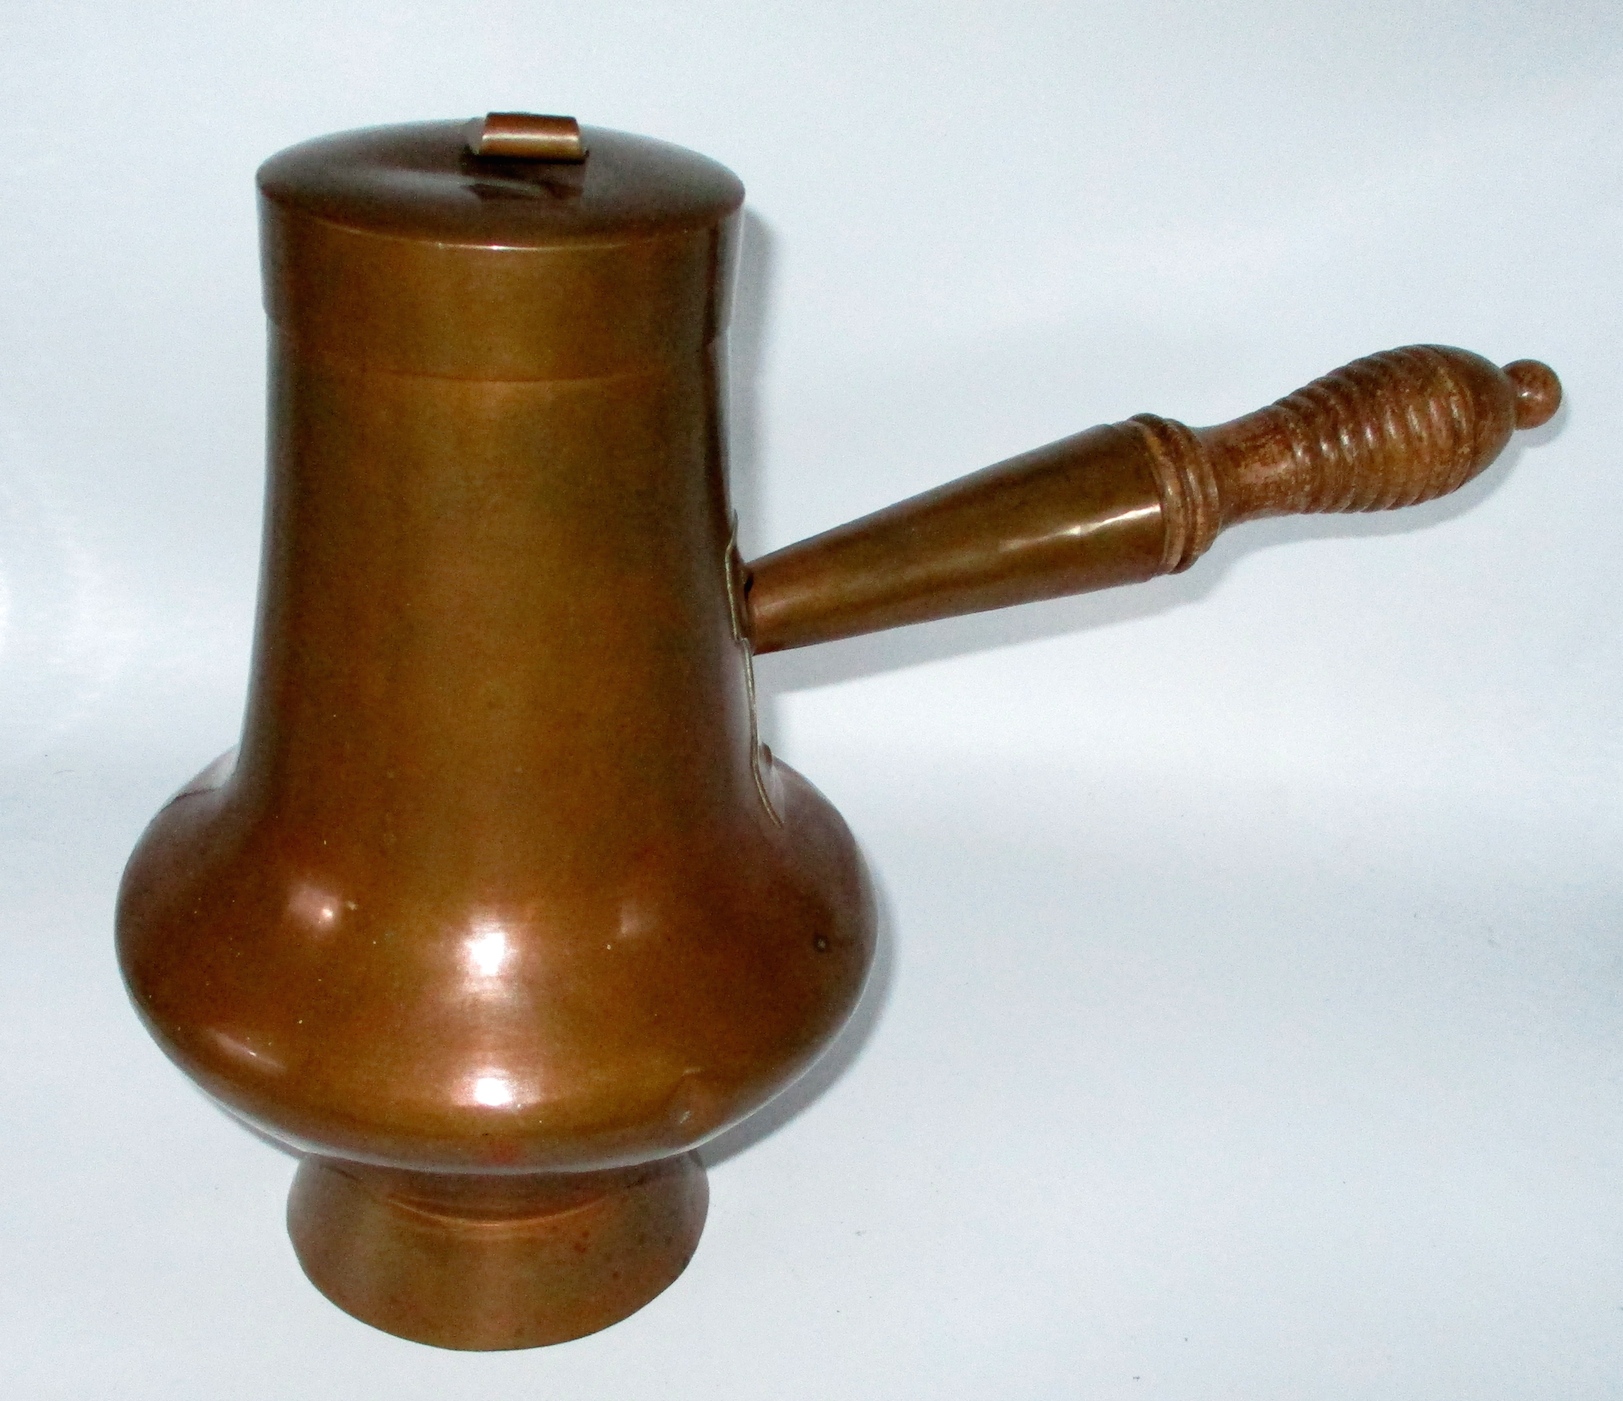 10" High Portuguese Copper Chocolate Pot (Francisco dos Santos - Caldeireiro (Coppersmith)